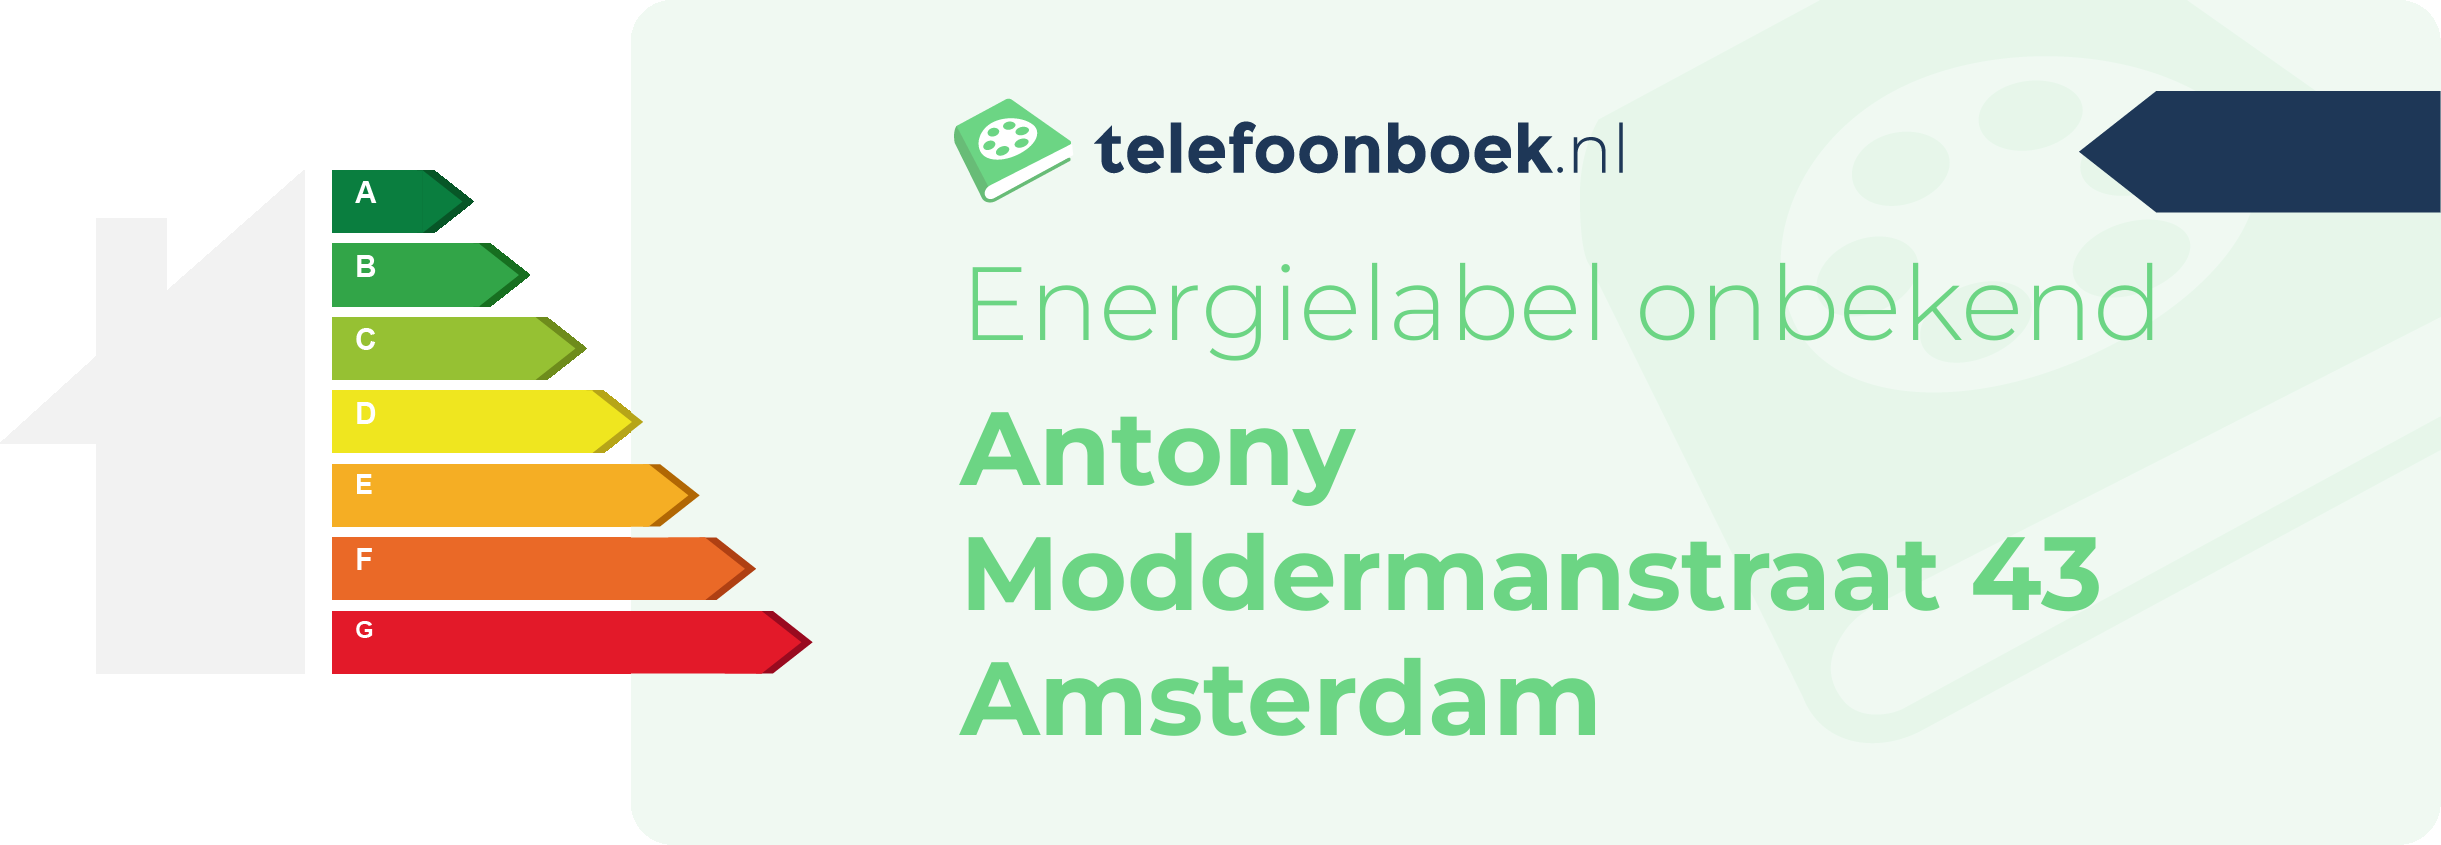 Energielabel Antony Moddermanstraat 43 Amsterdam